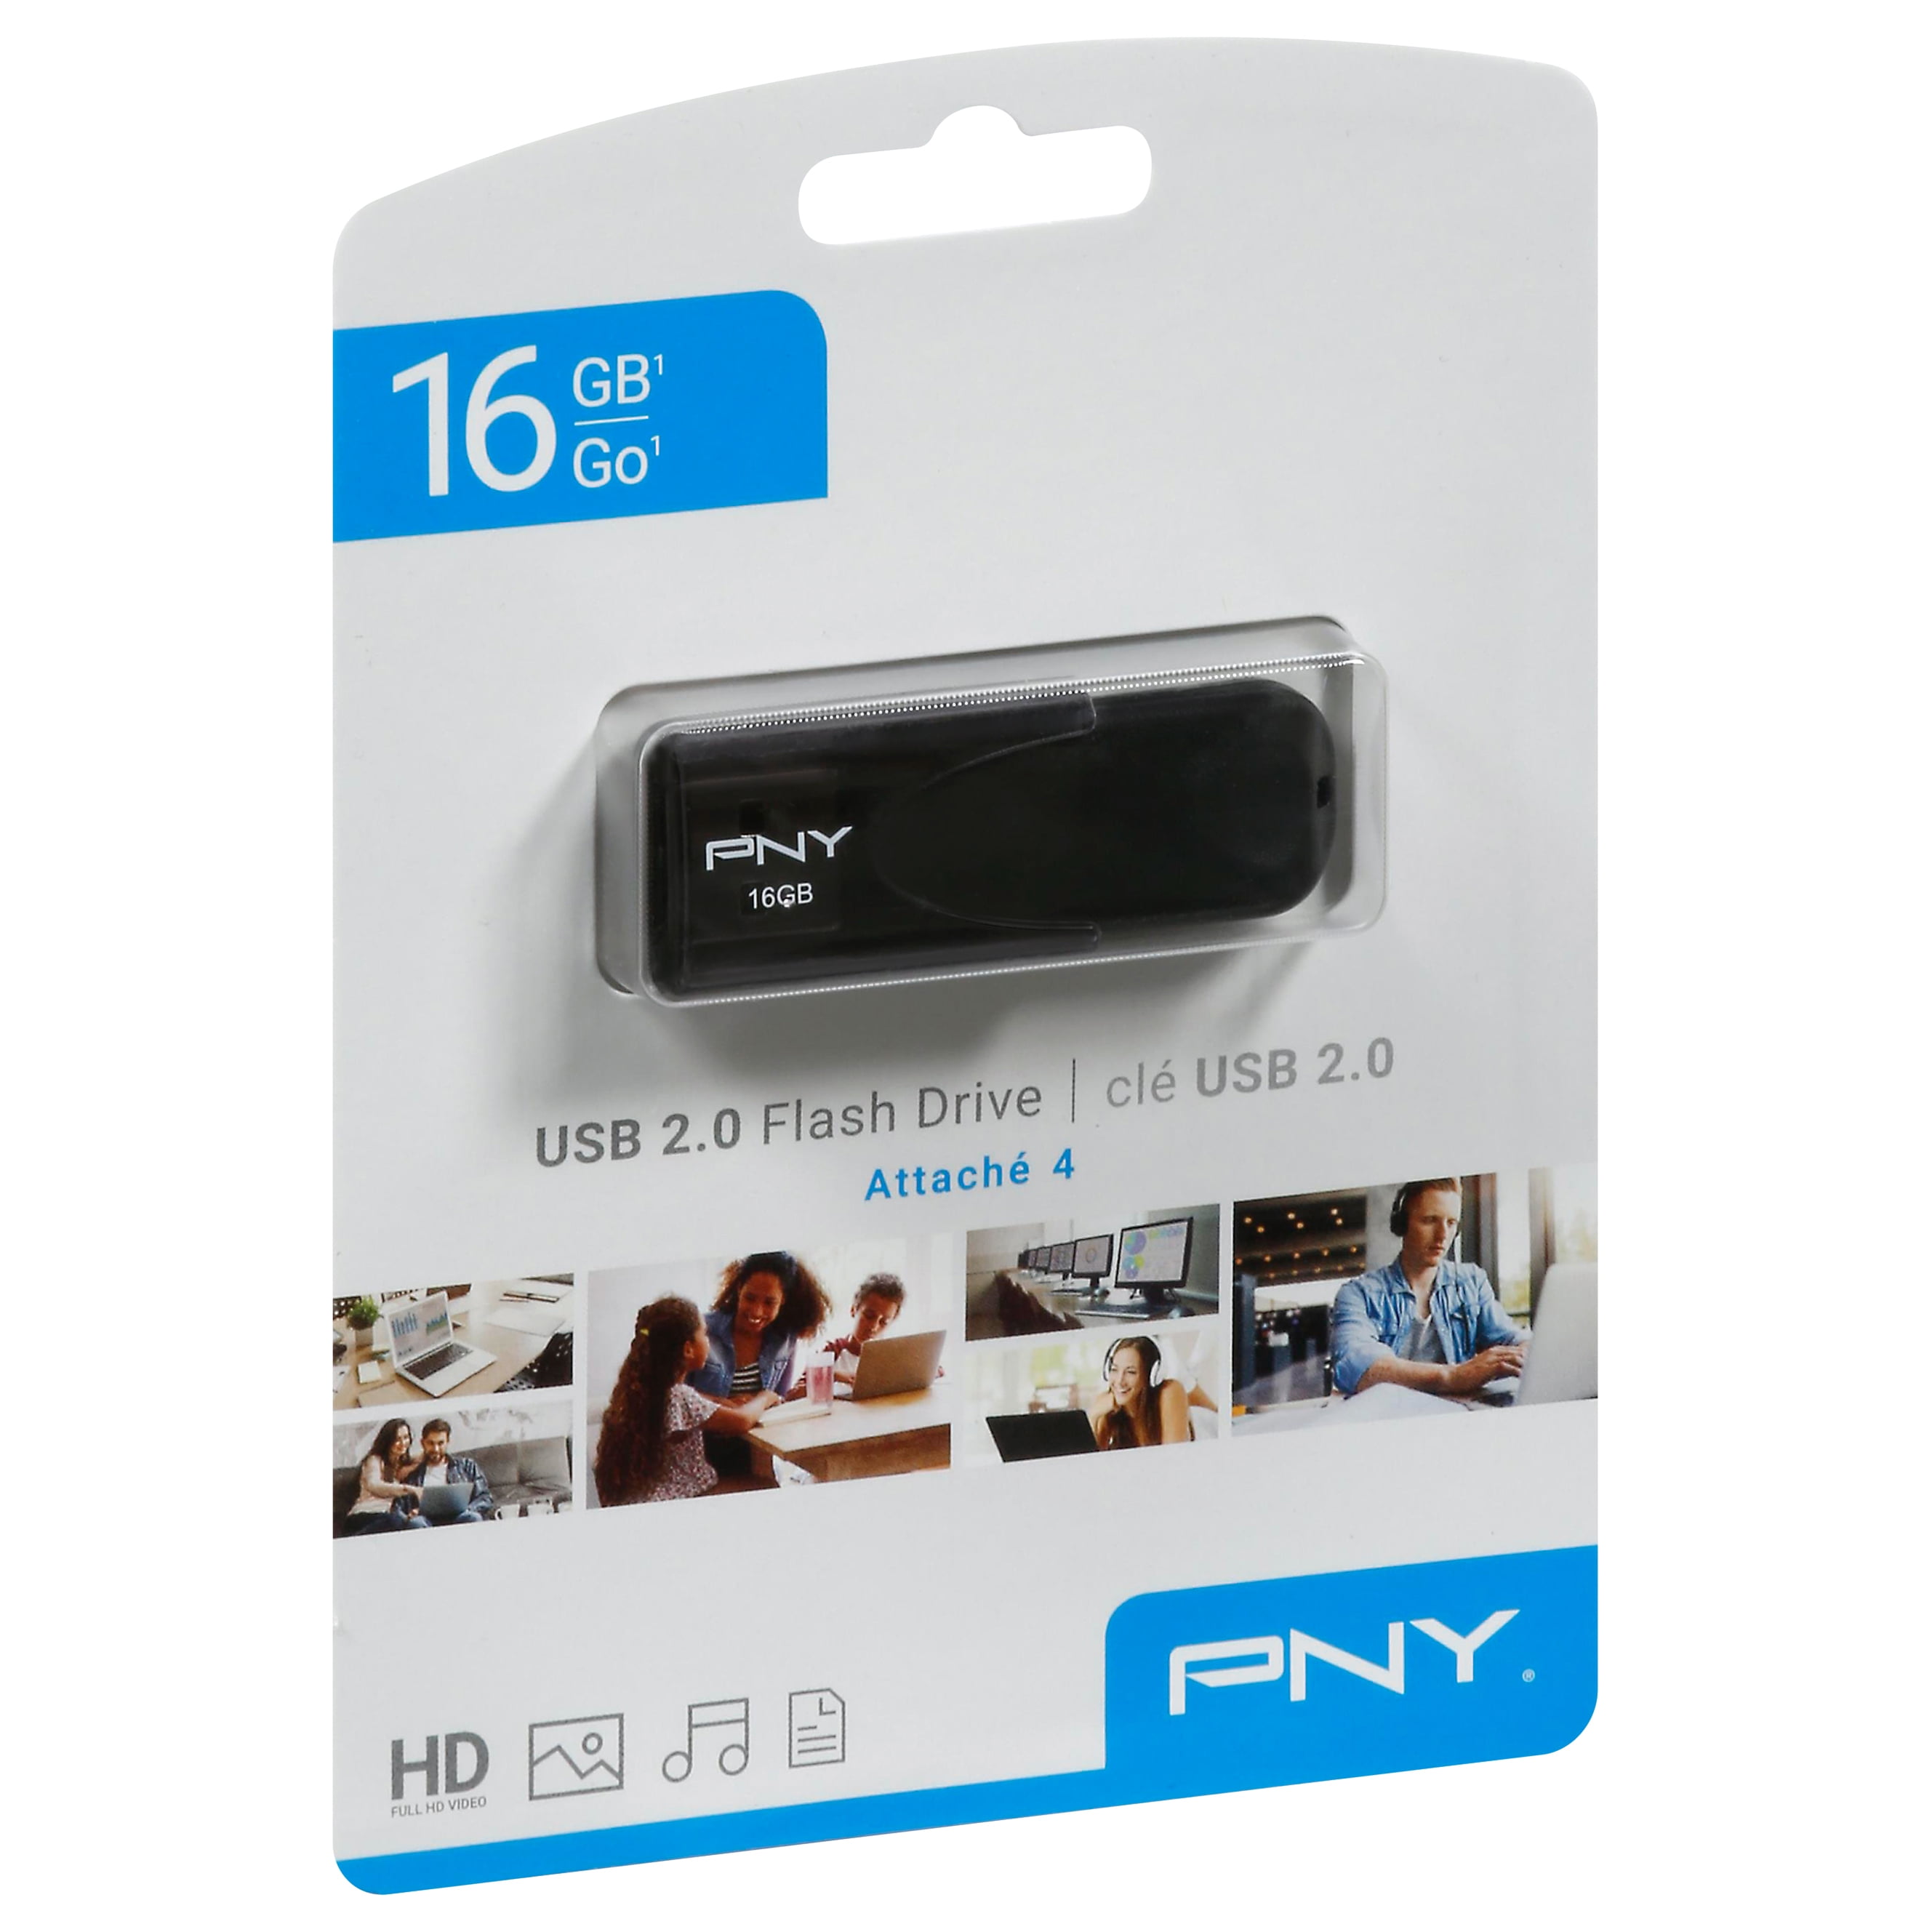 PNY Attach������ 4 - flash drive - 16 GB - USB 2.0 - black - Walmart.com